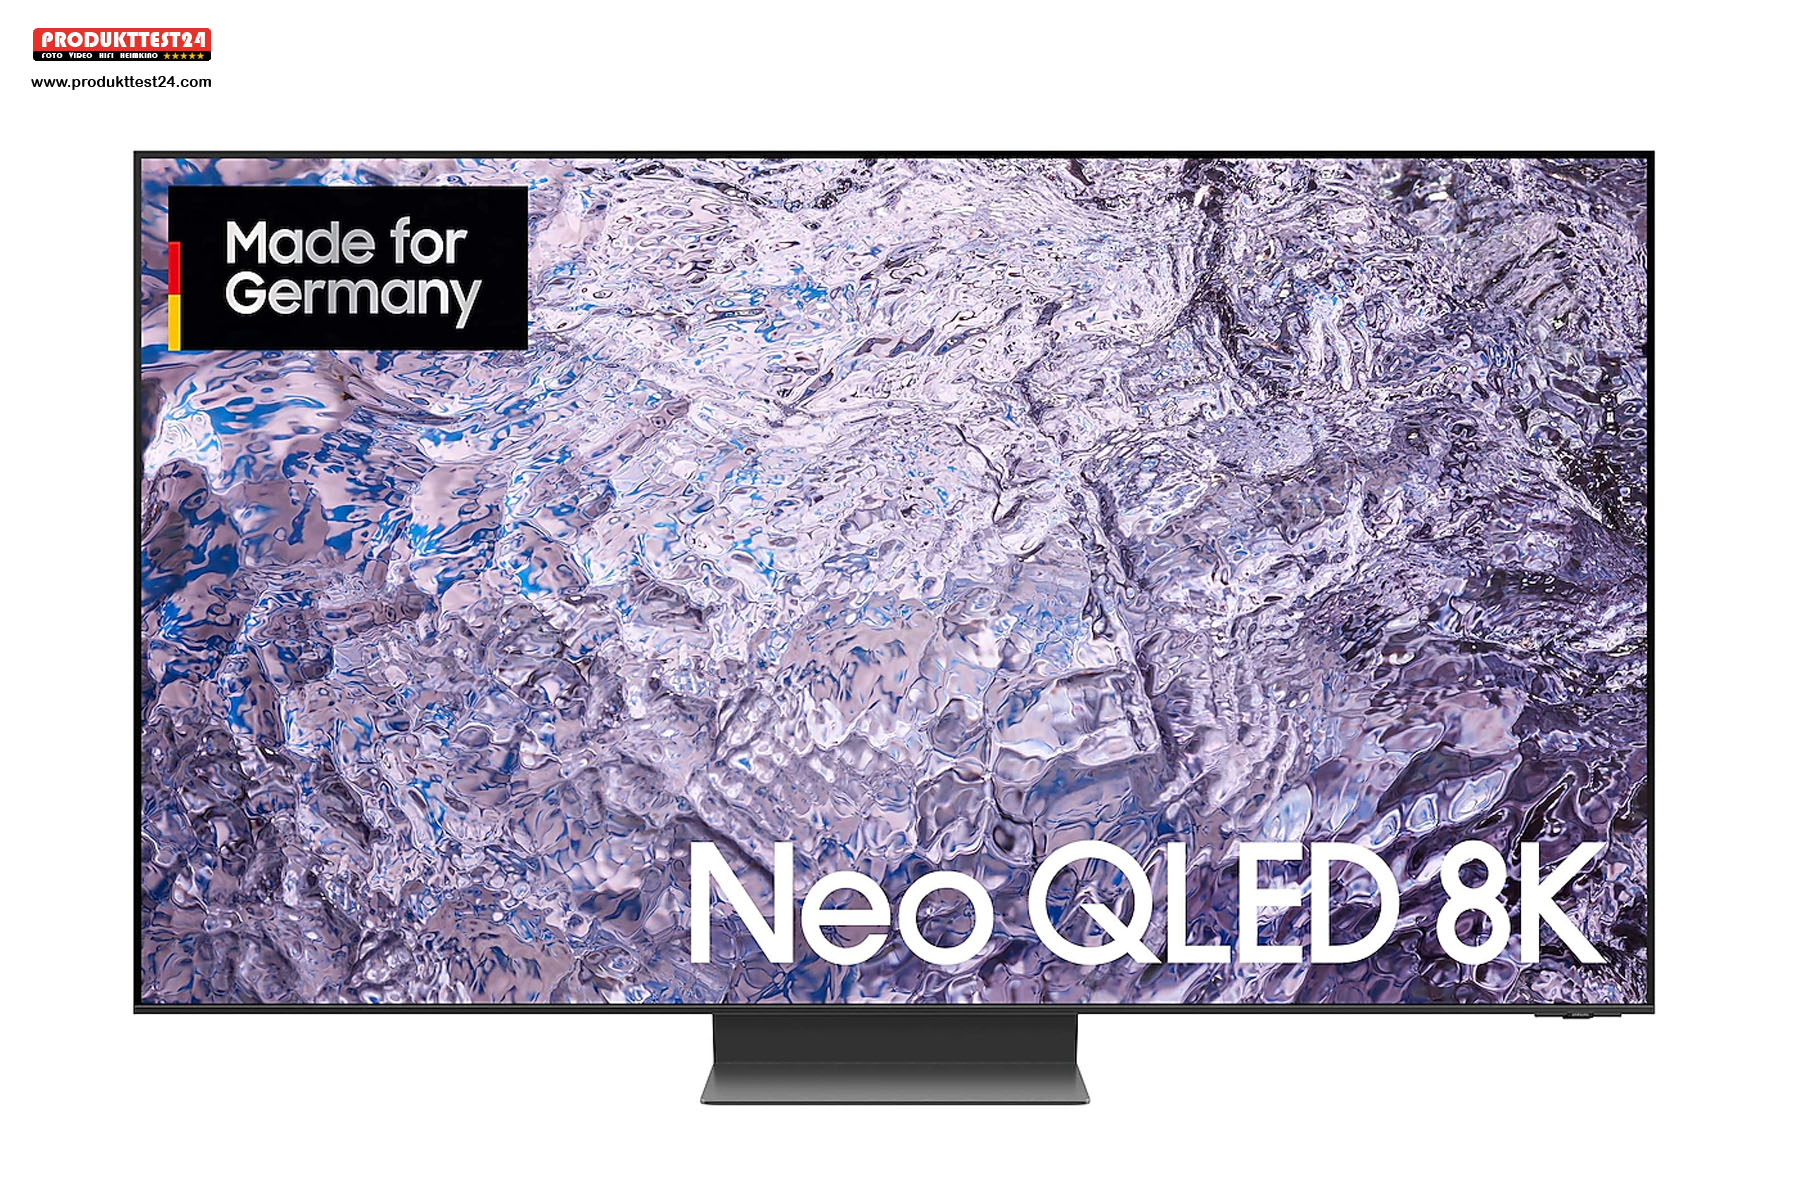 Der Samsung QN800C Neo QLED 8K-Fernseher im XXL-Format mit riesiger 85 Zoll Bilddiagonale